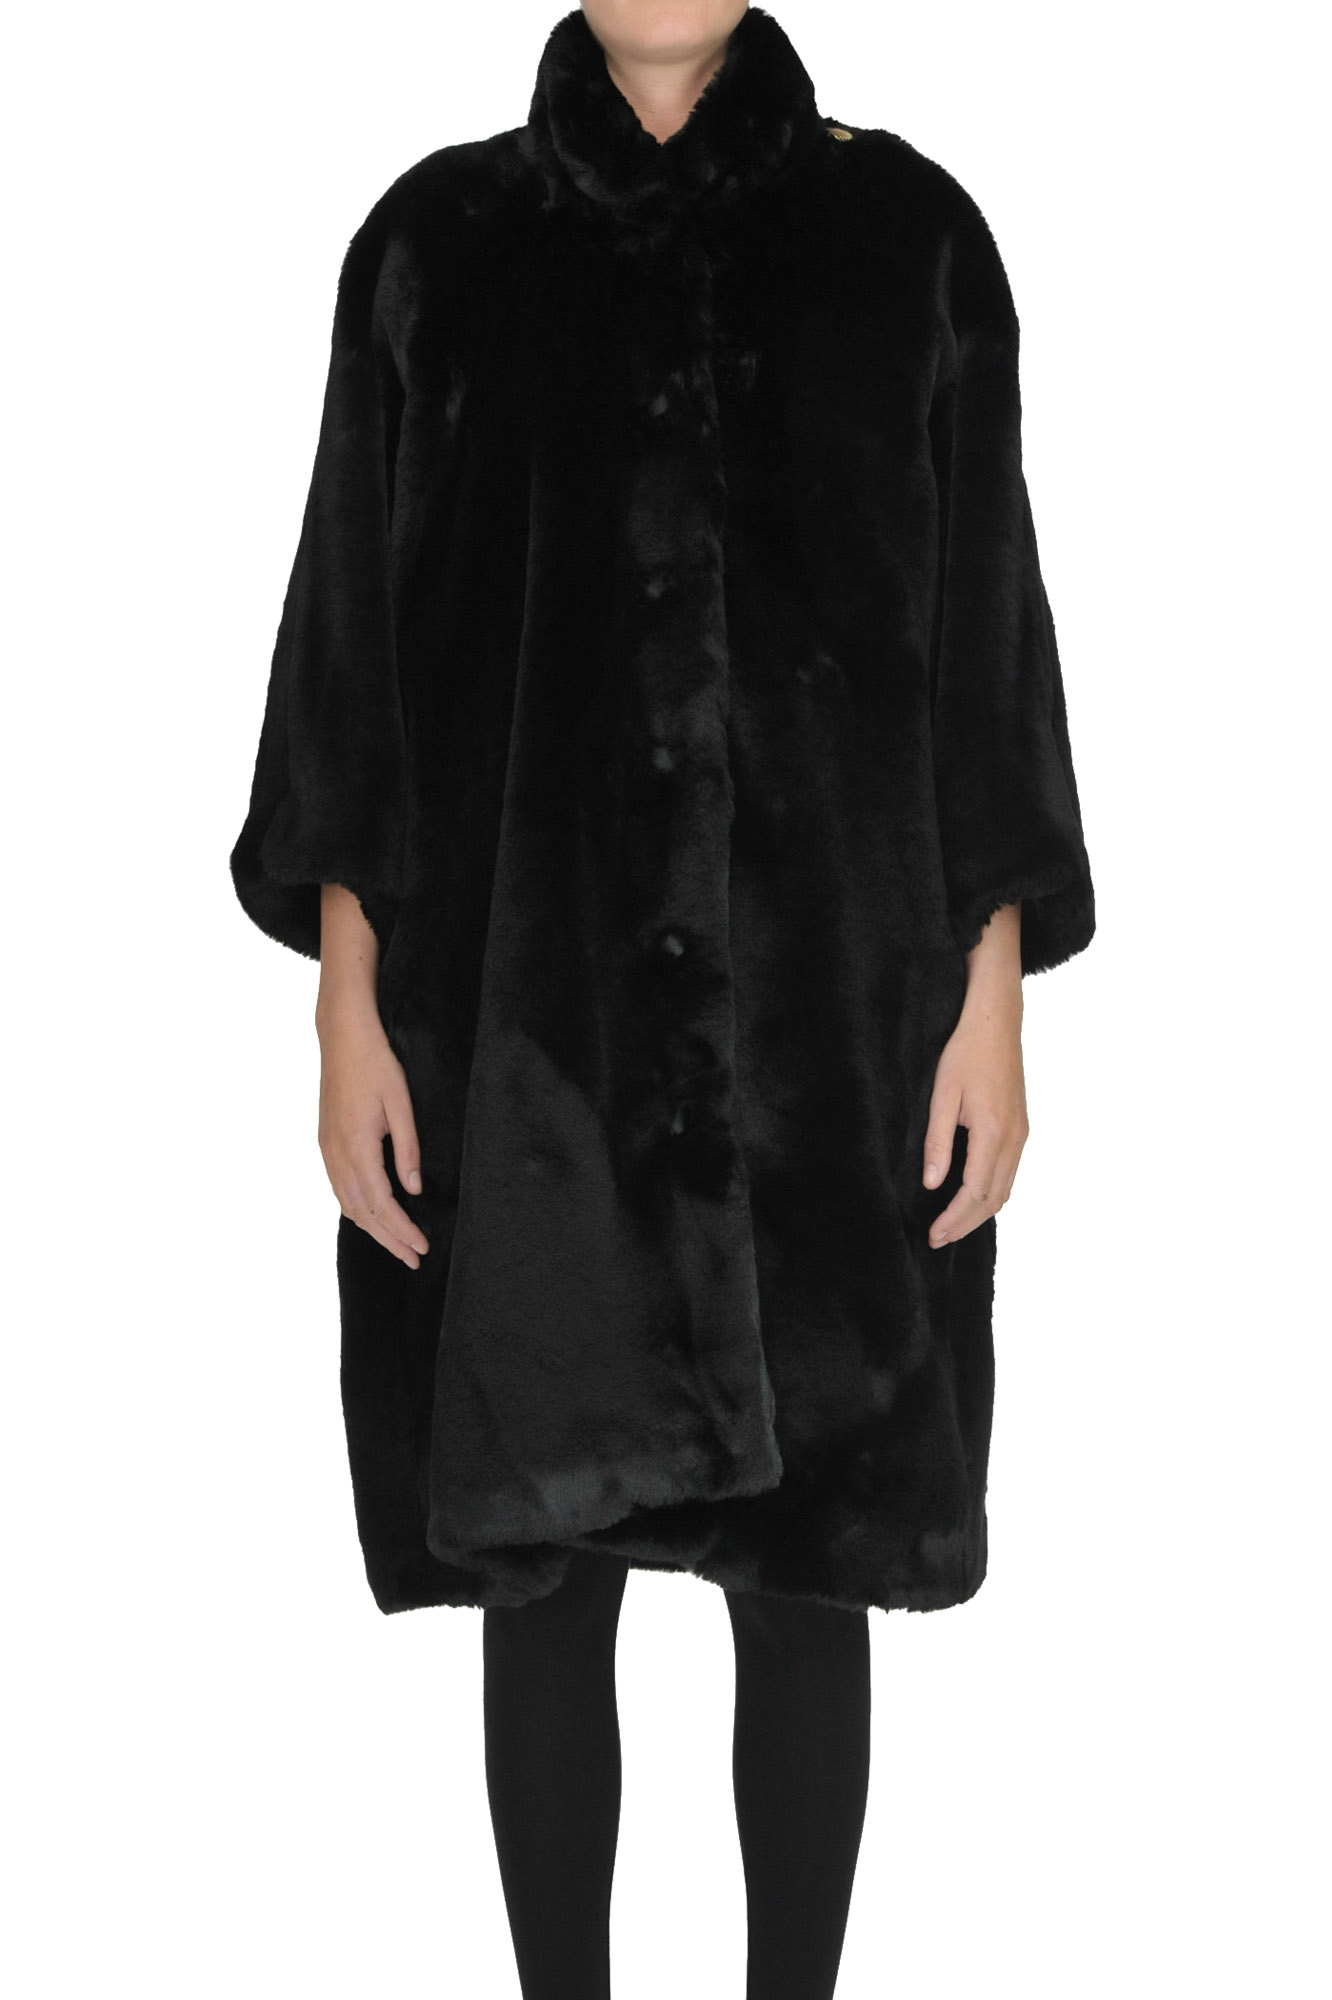 Balenciaga Oversized eco-fur coat - Buy online on Glamest Fashion ...